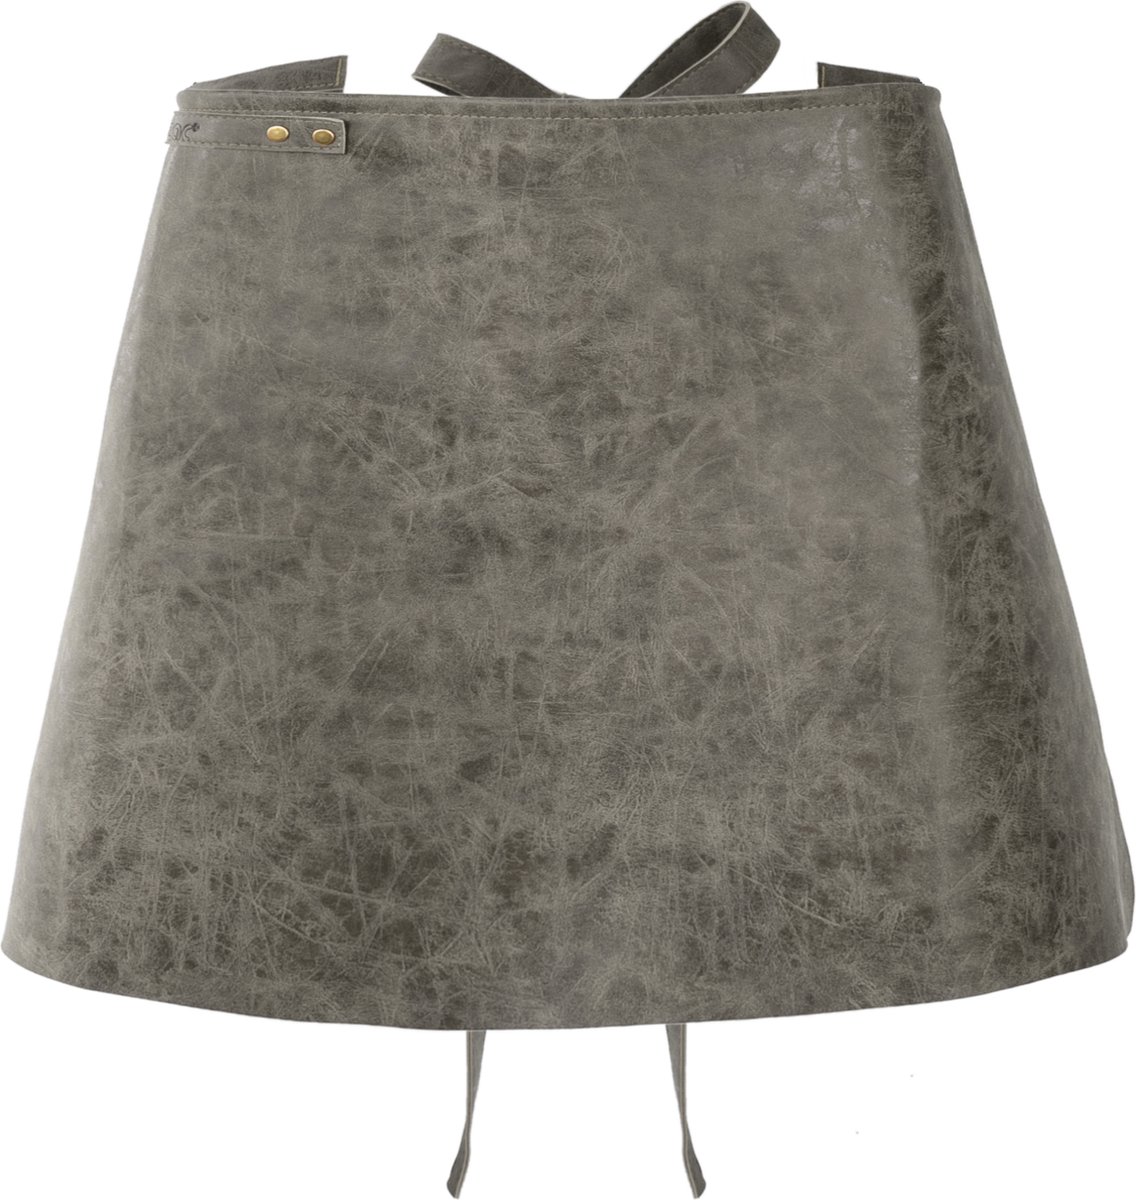 Schort TRUMAN Bistro (incl. Accesssory Bag), 70x45 cm, charcoal